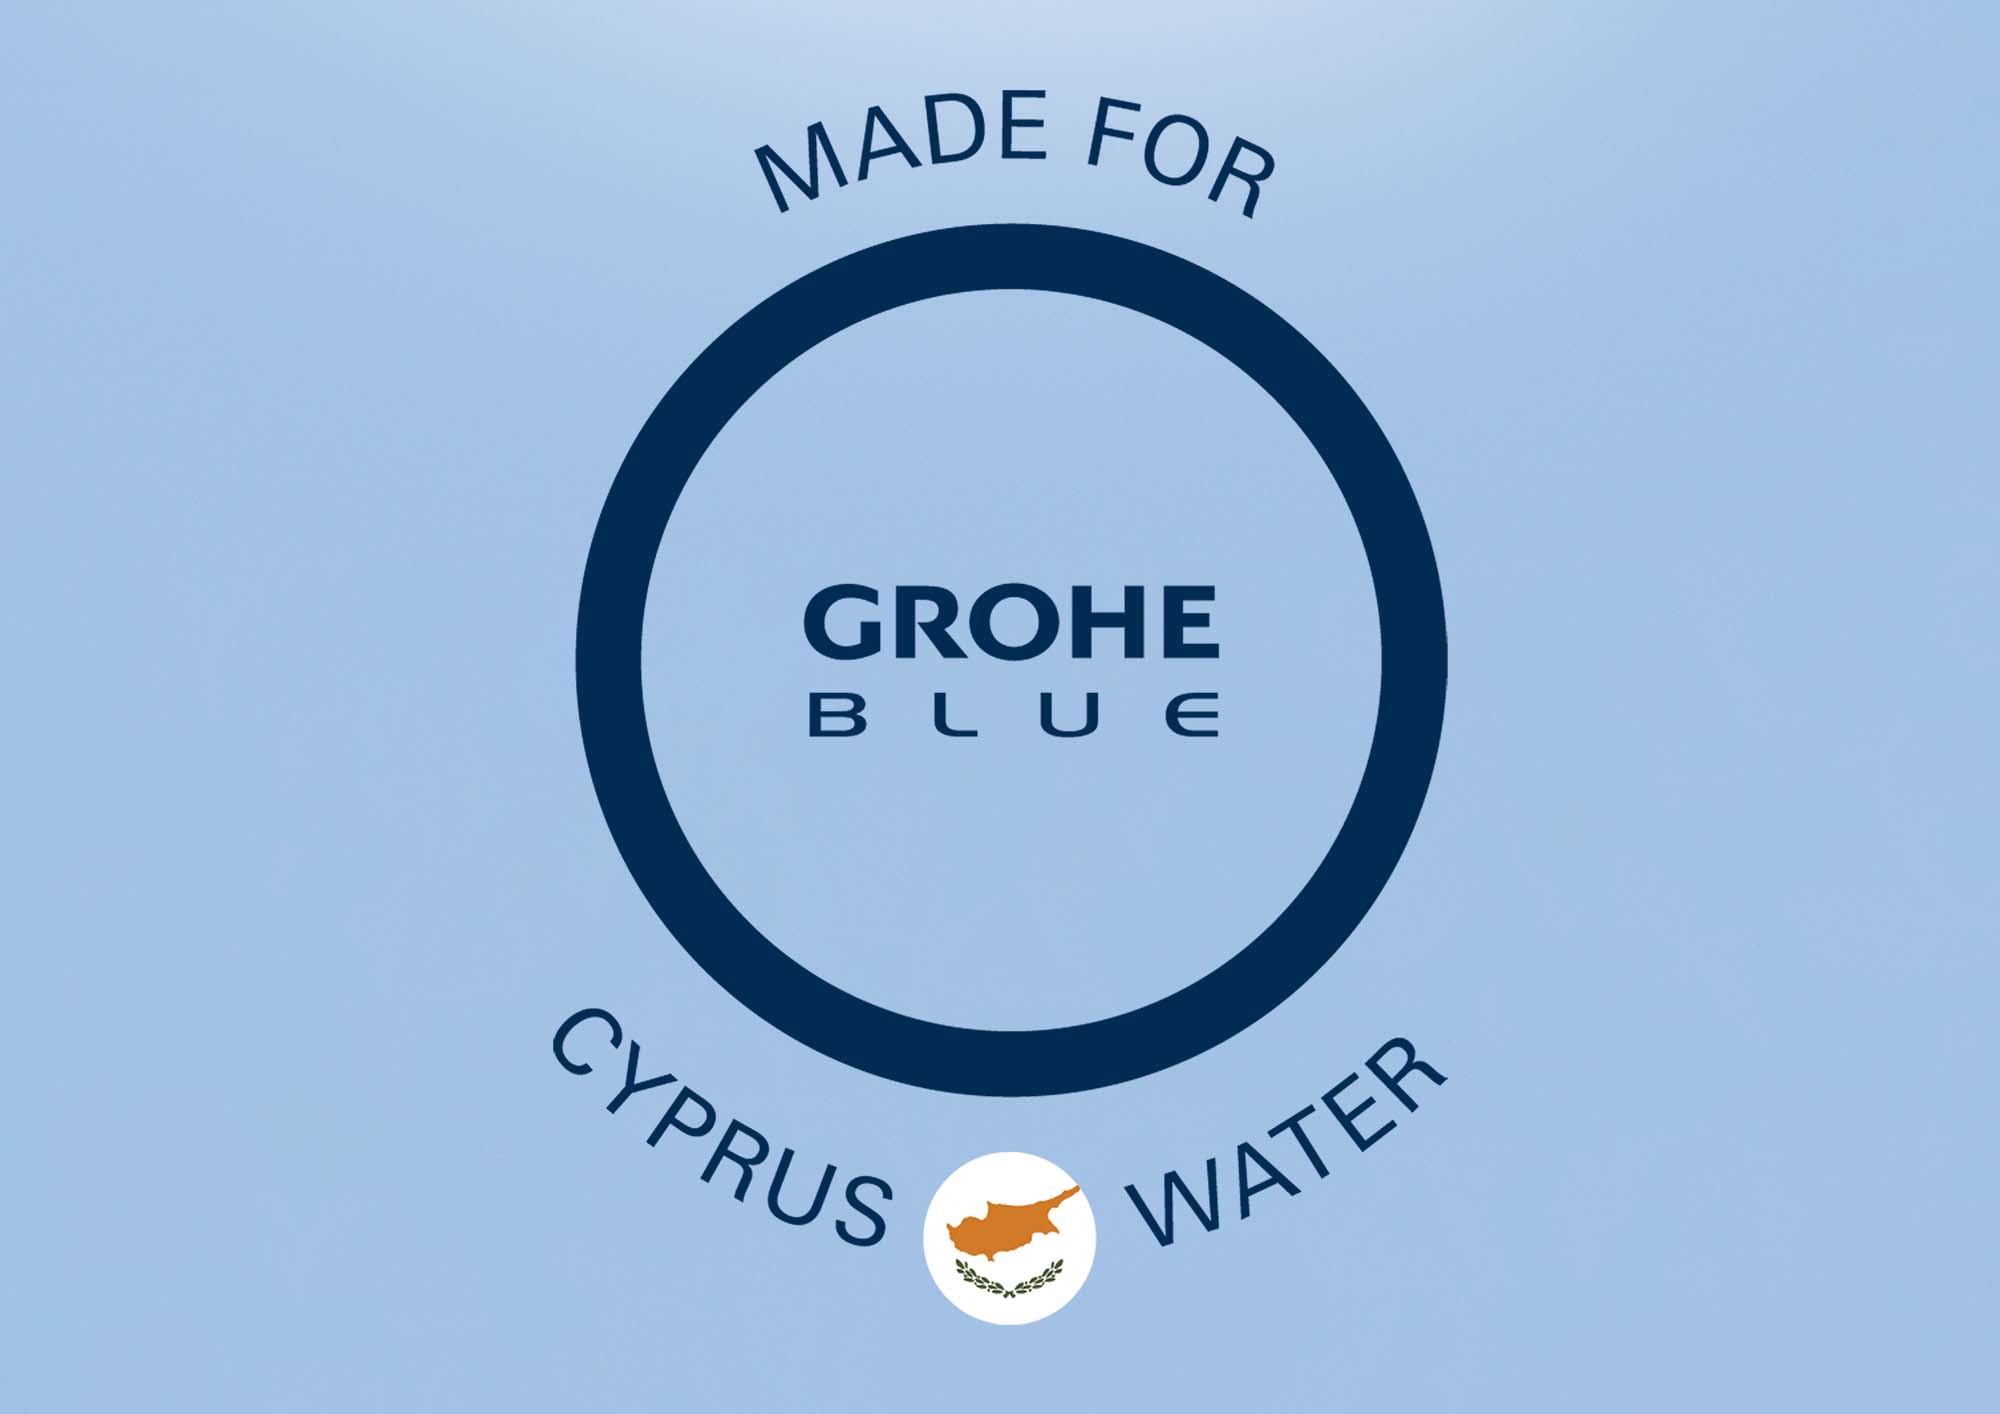 Όσο πιο τοπικό γίνεται, προσαρμοσμένο στο γούστο σας, το GROHE ΒLUE είναι φτιαγμένο για το Κυπριακό νερό